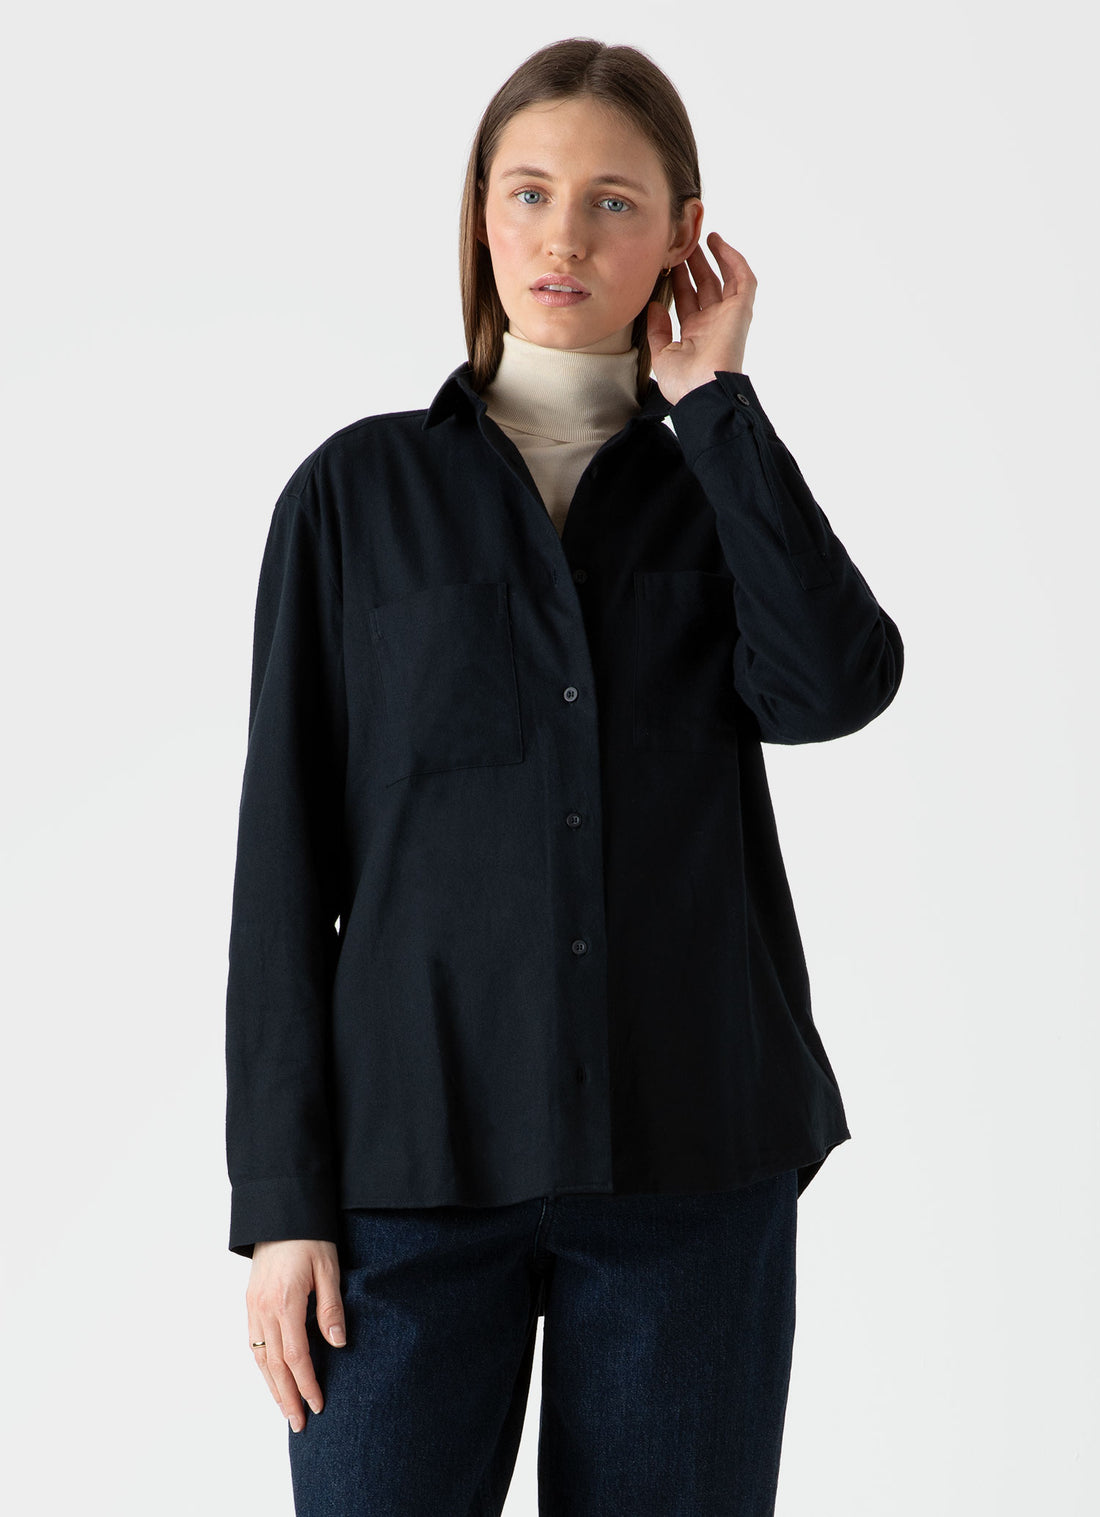 Women's Oversized Flannel Shirt in Black